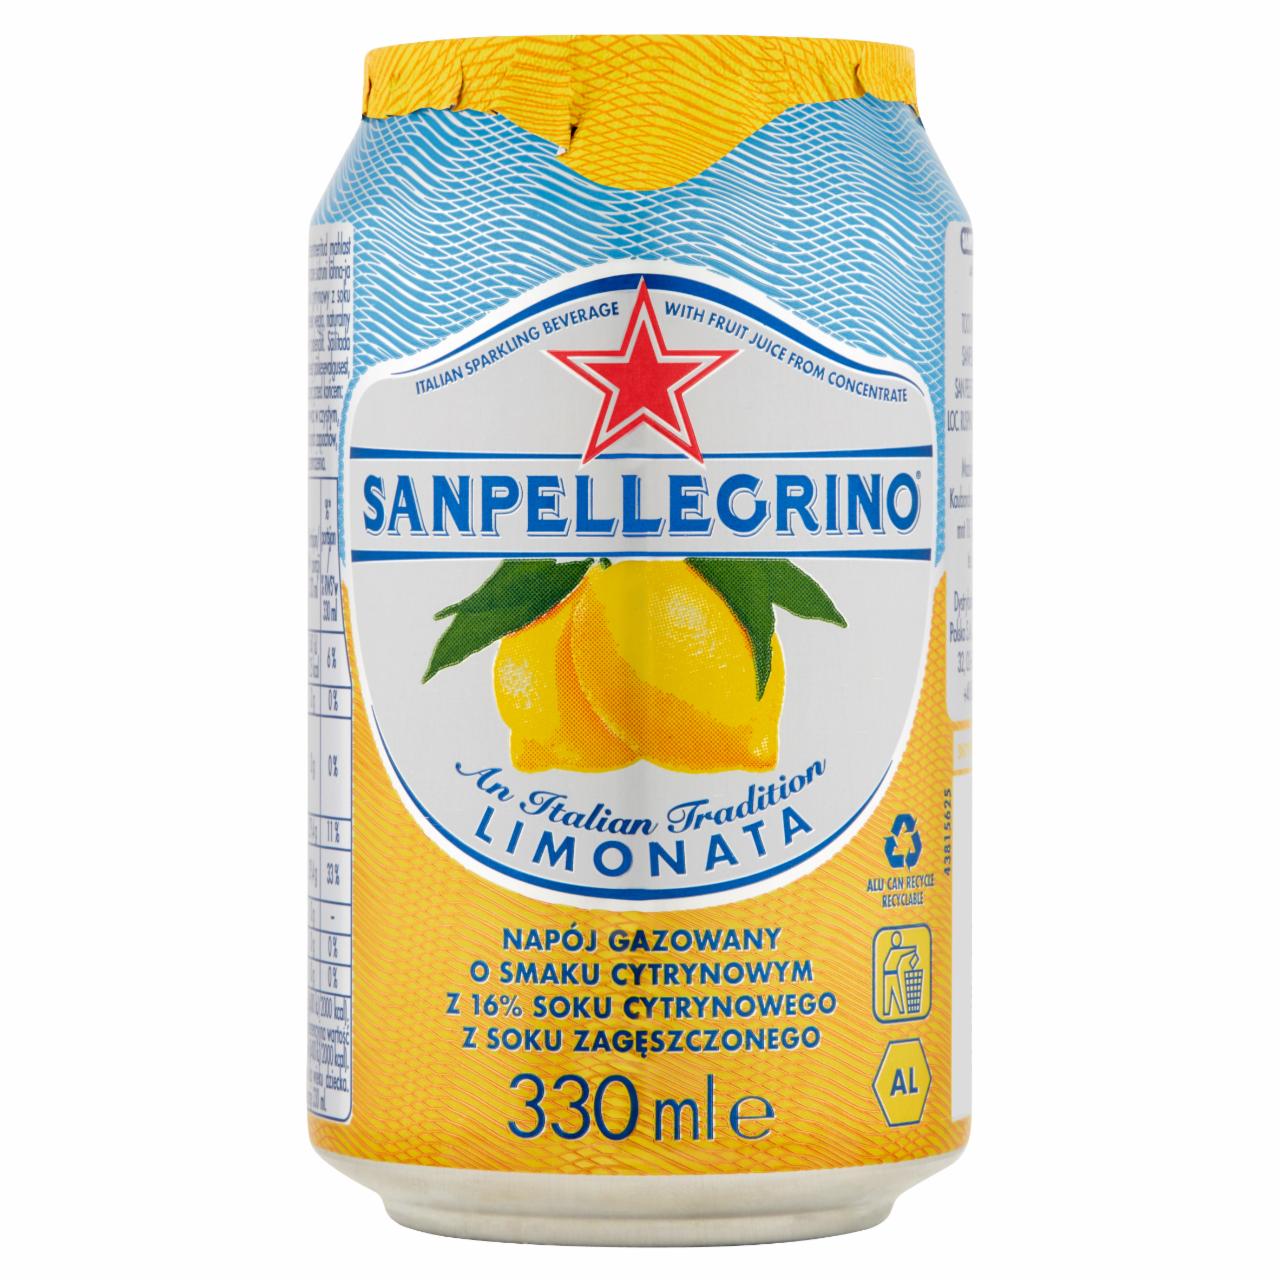 Zdjęcia - Sanpellegrino Limonata Napój gazowany o smaku cytrynowym 330 ml